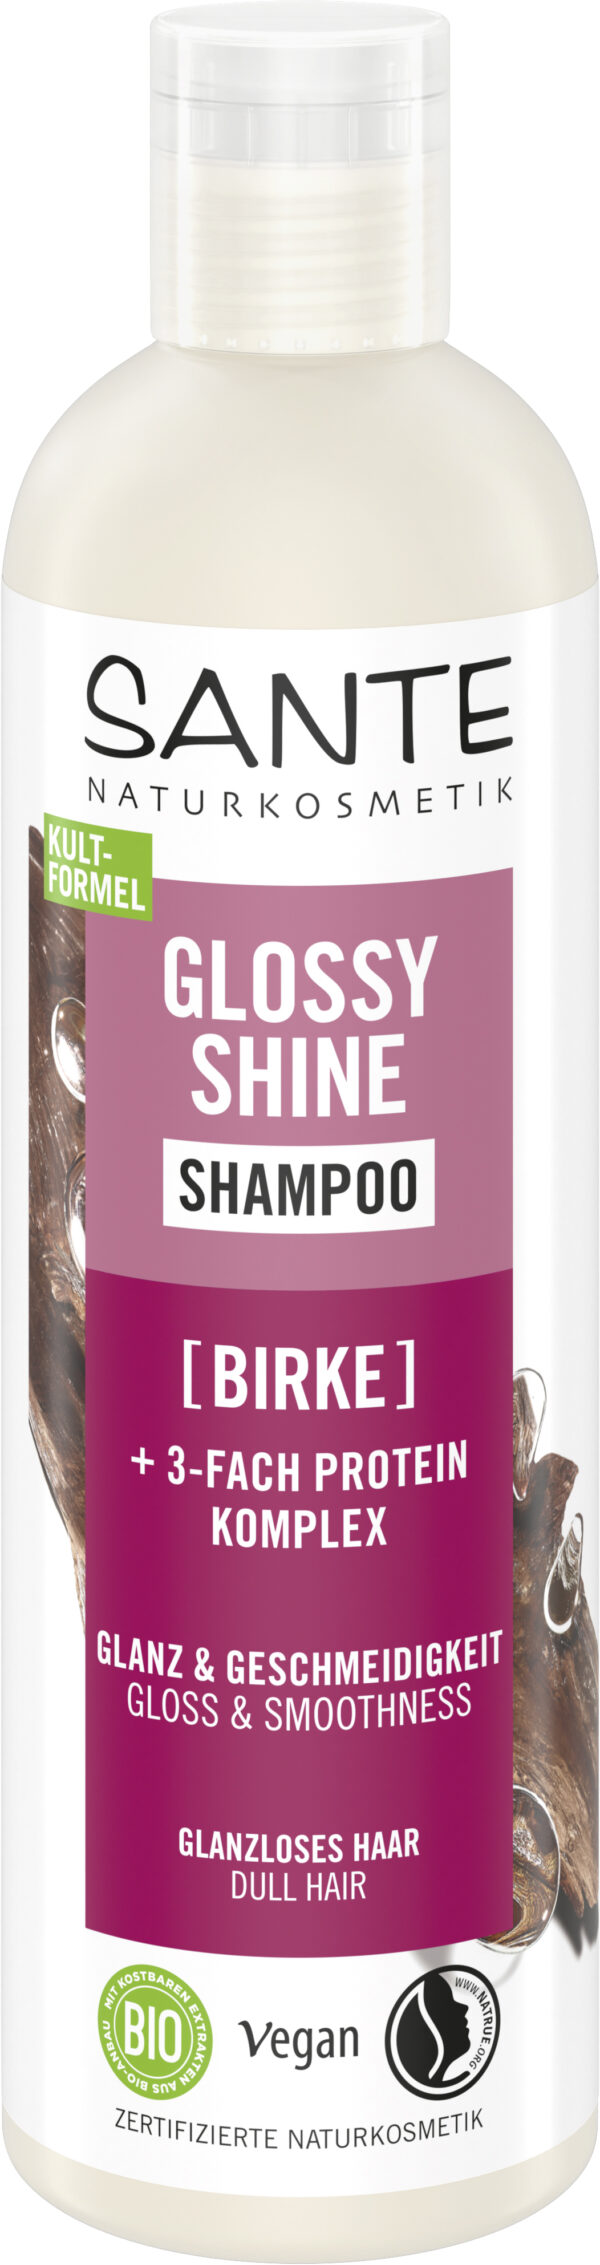 Šampón GLOSSY SHINE 250 ml